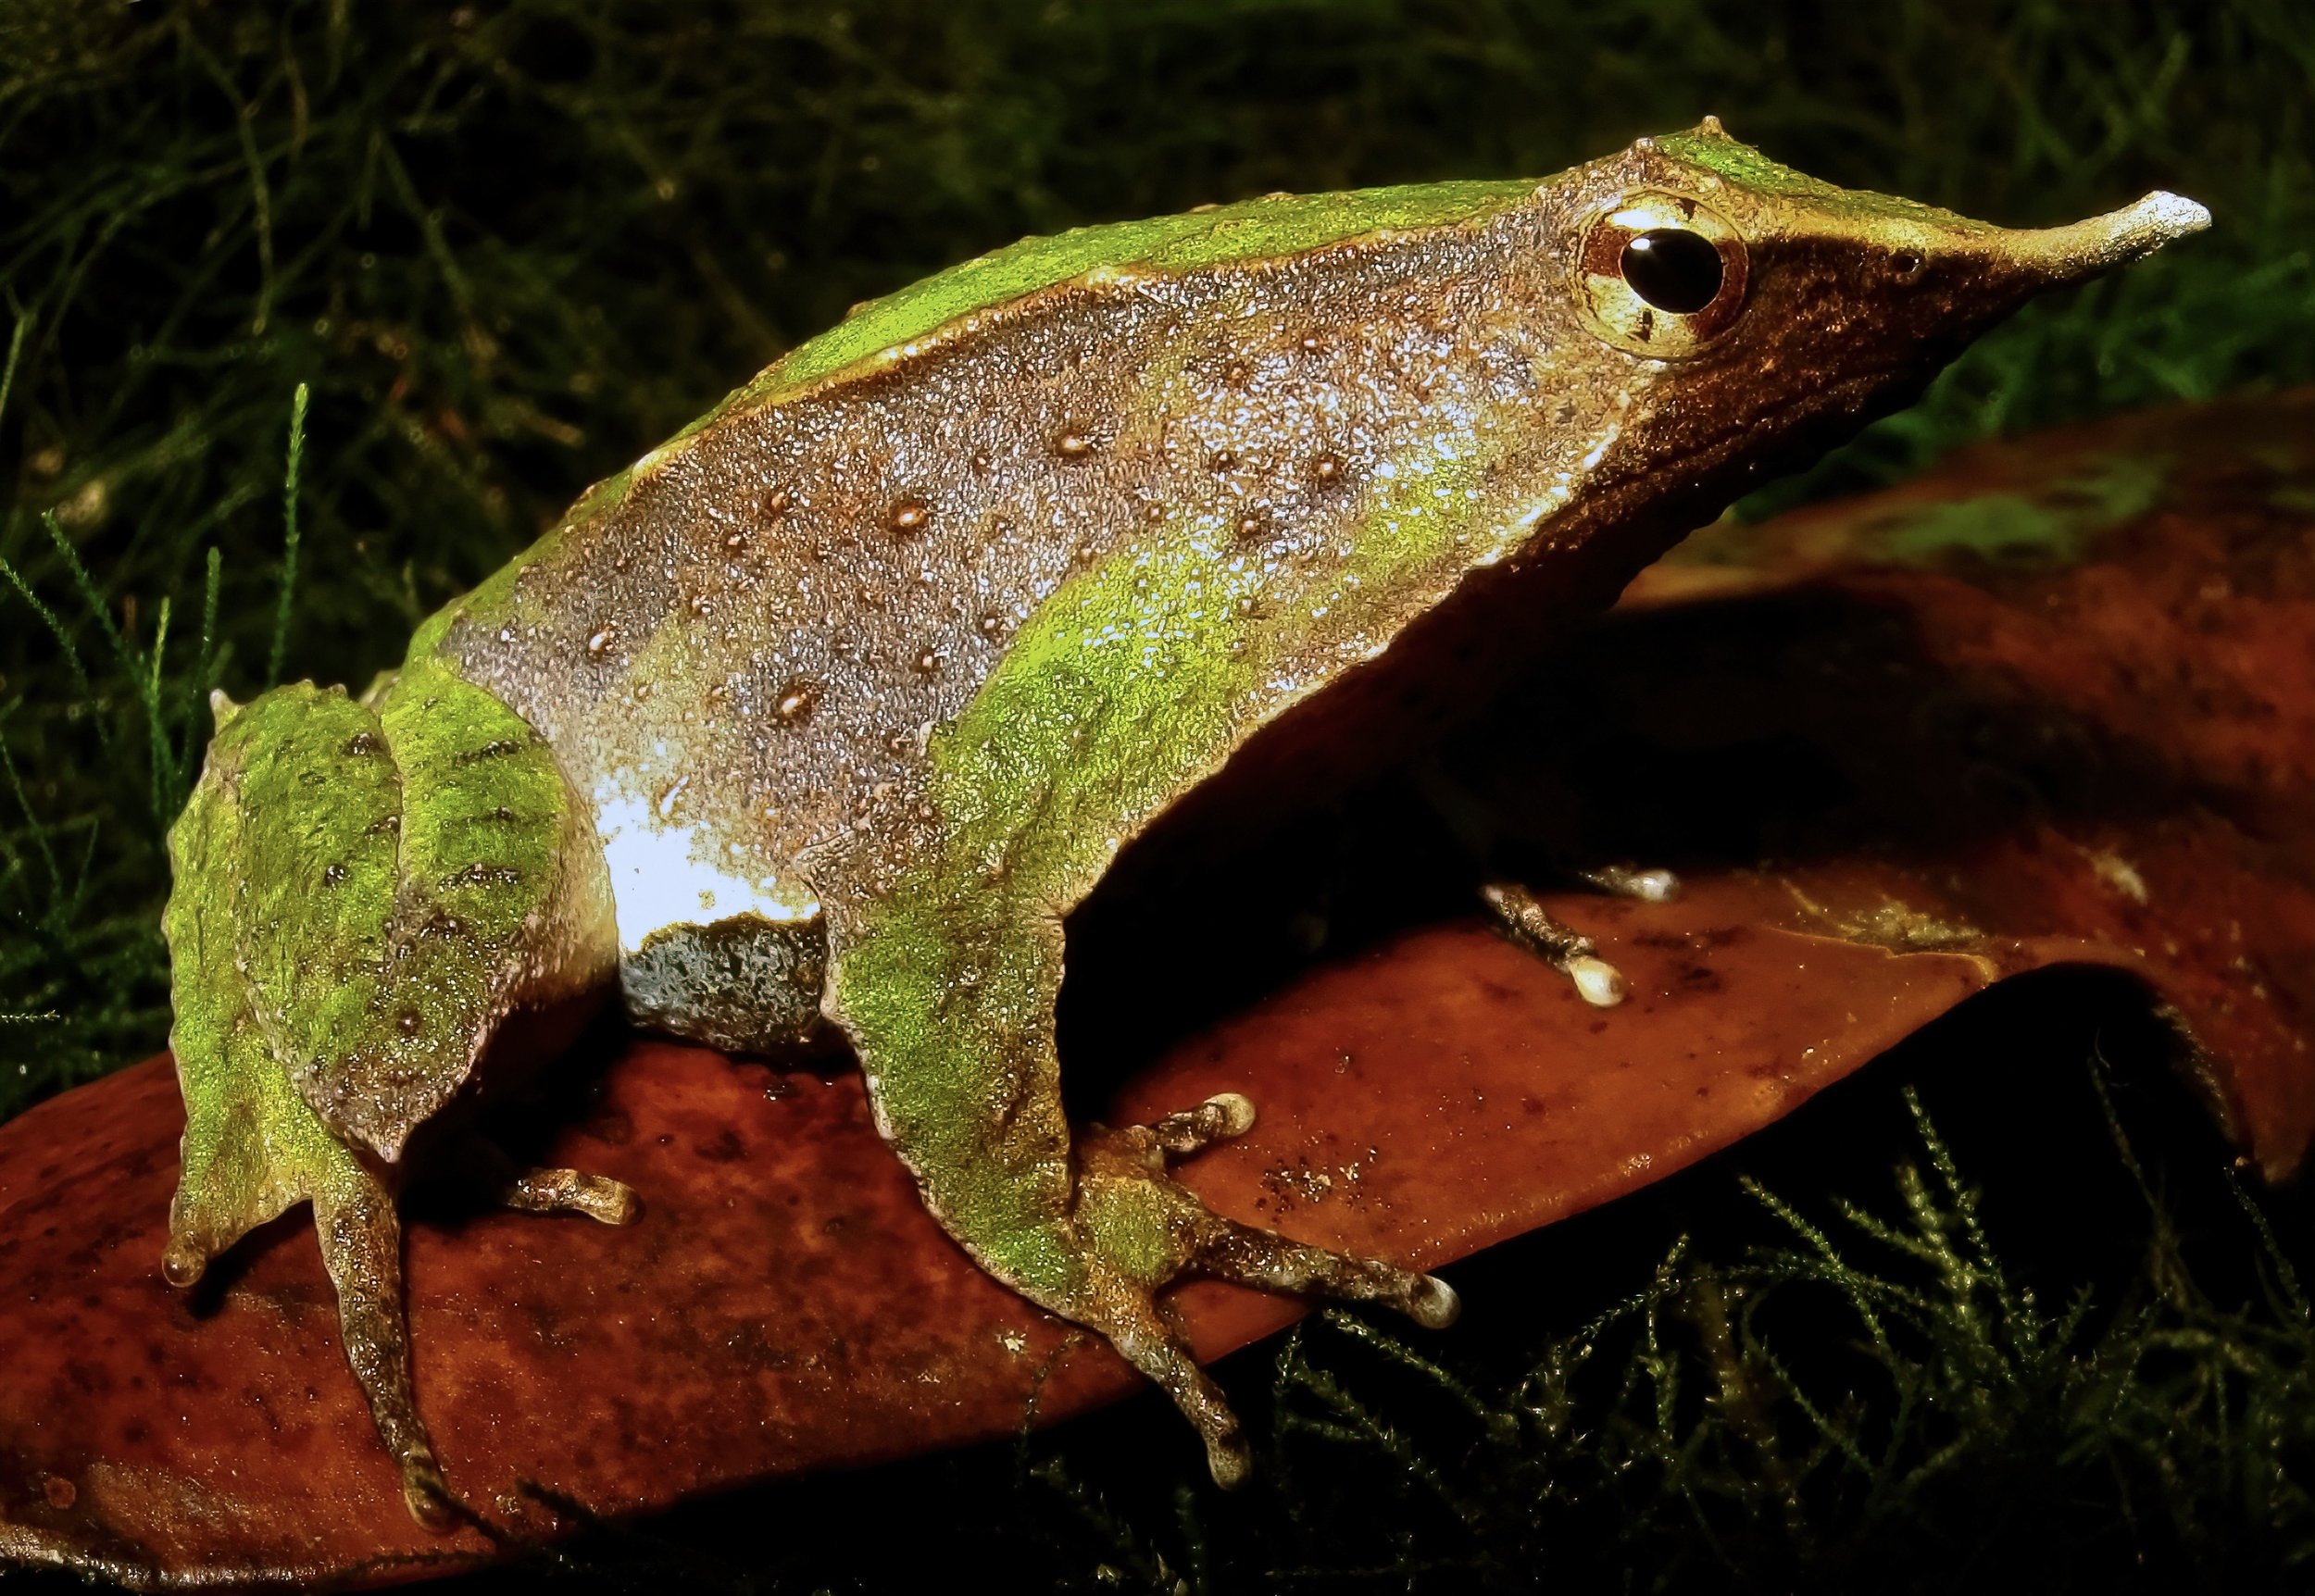  Darwin’s Frog,  Rhinoderma darwinii , Contulmo Natural Monument, Biobío Region, Chile. Image: ©W. W. Lamar 